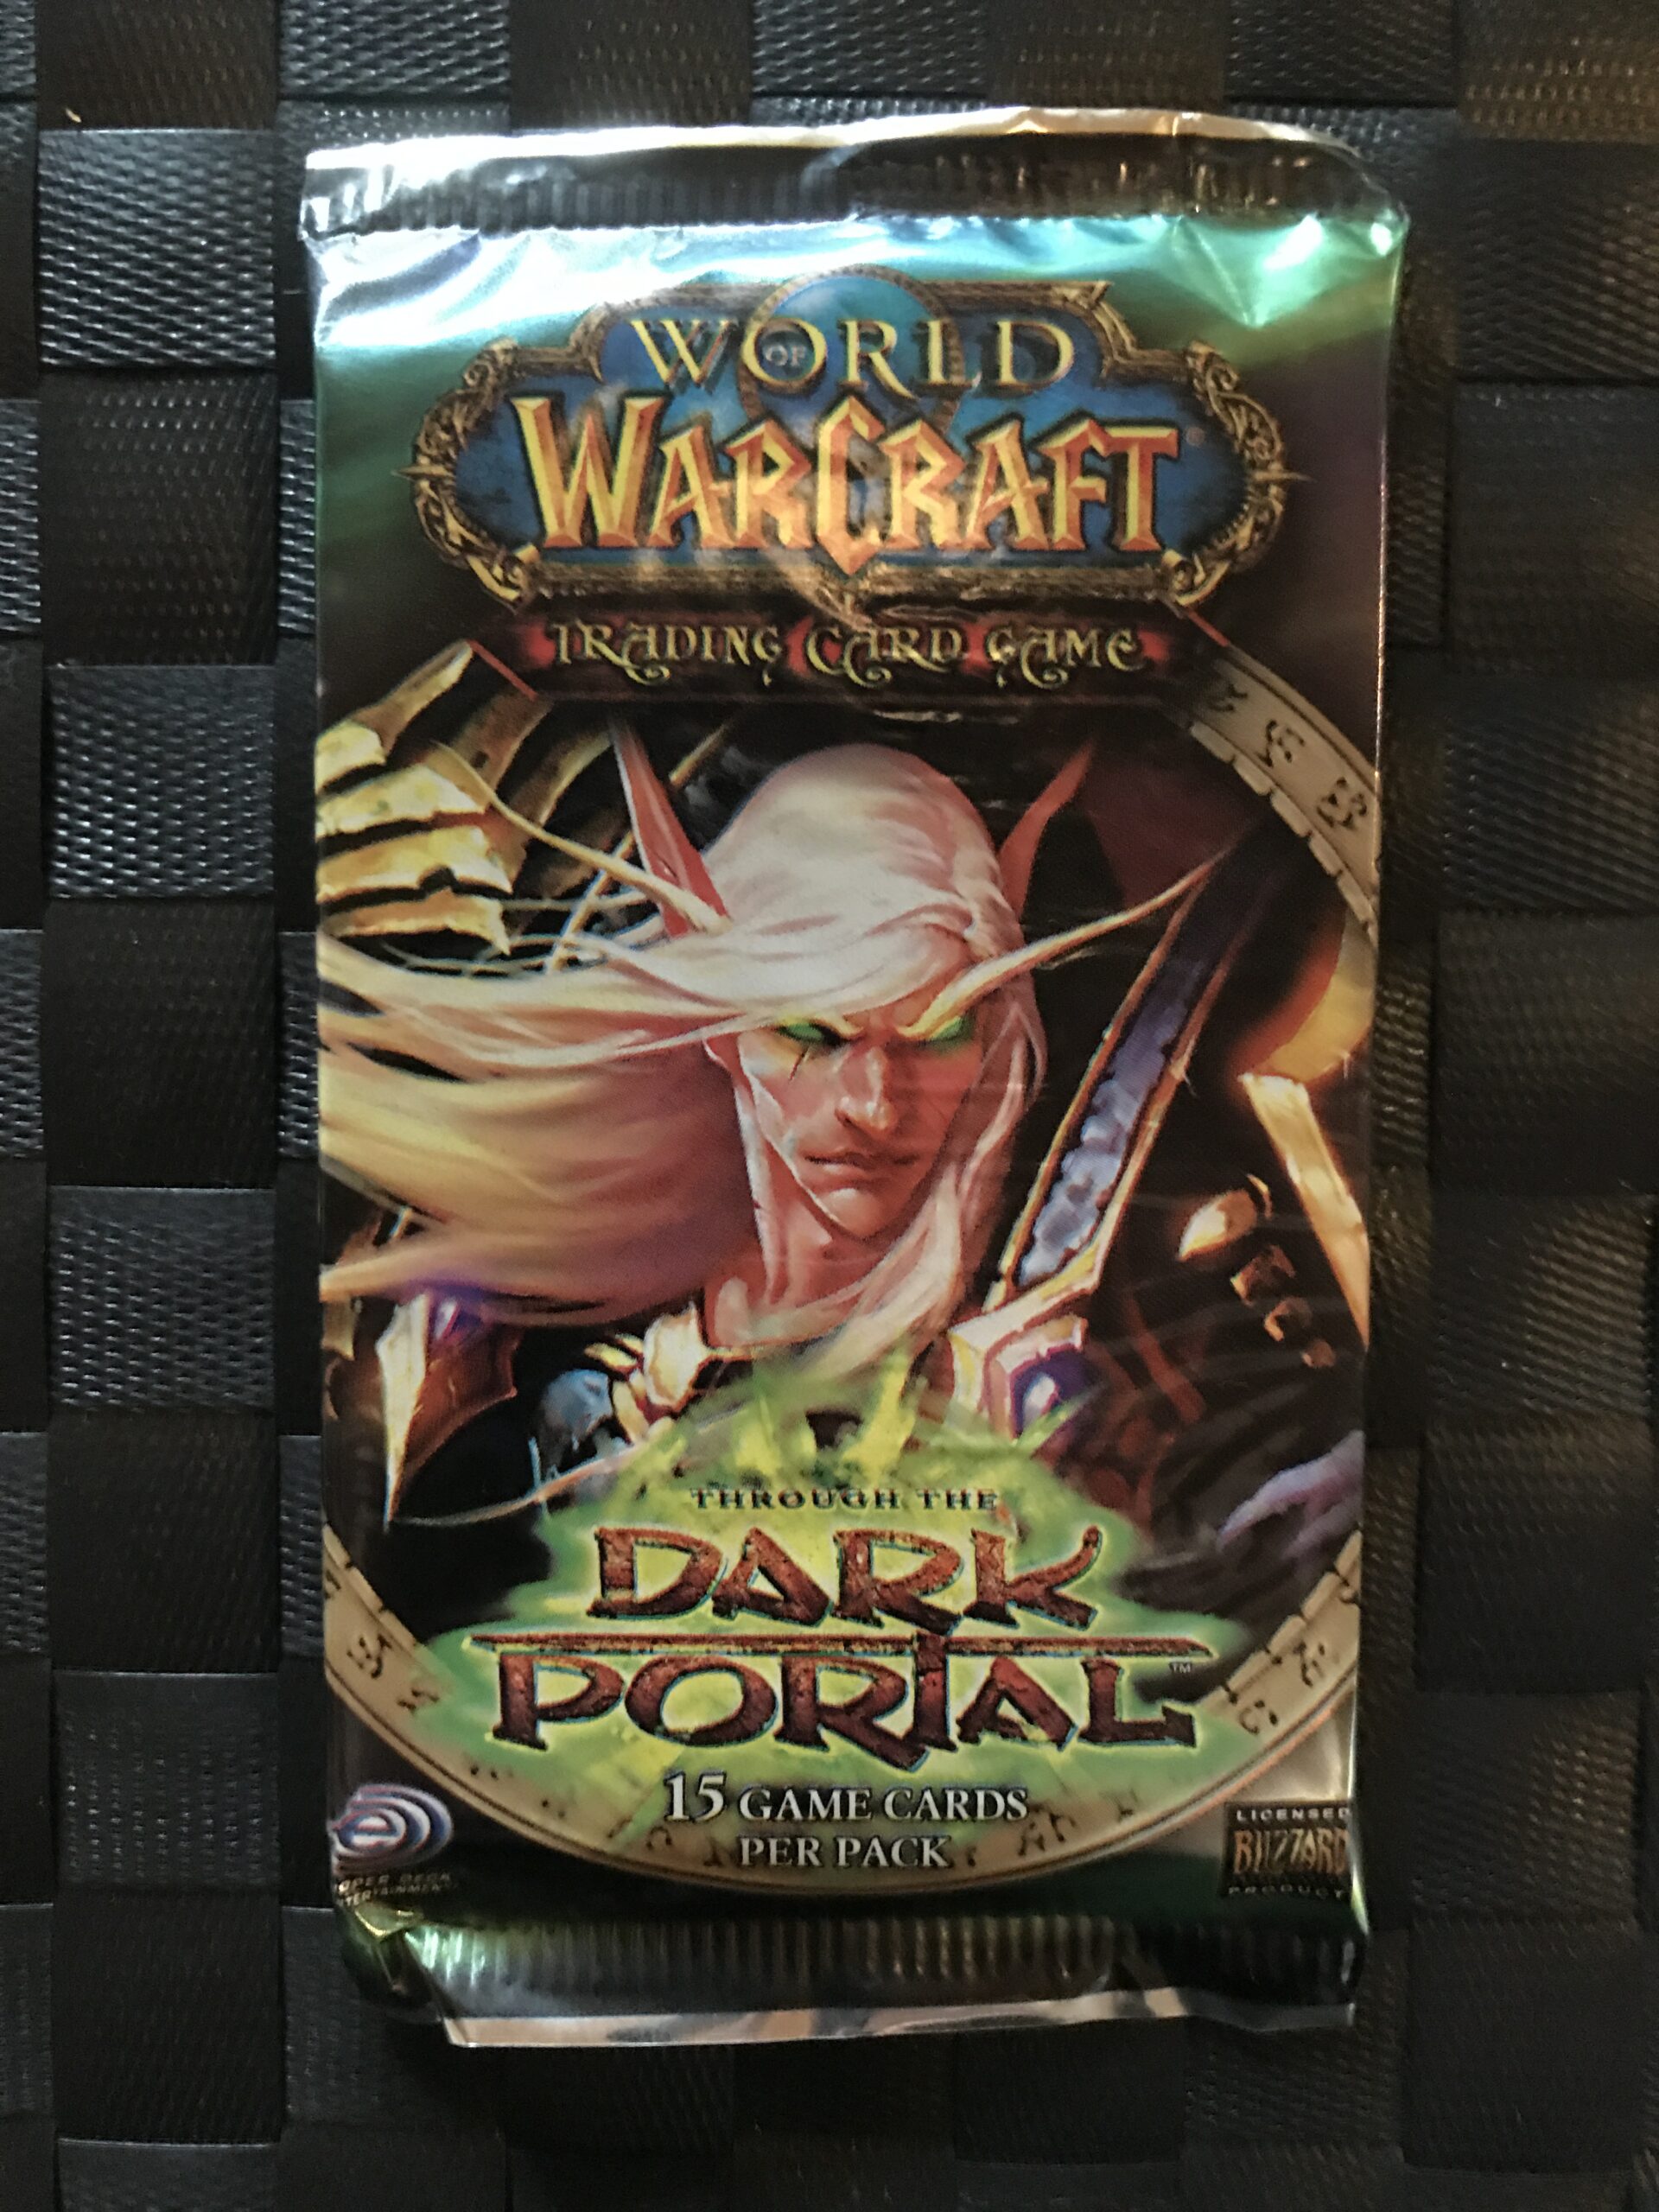 World of WarCraft: Dark Portal